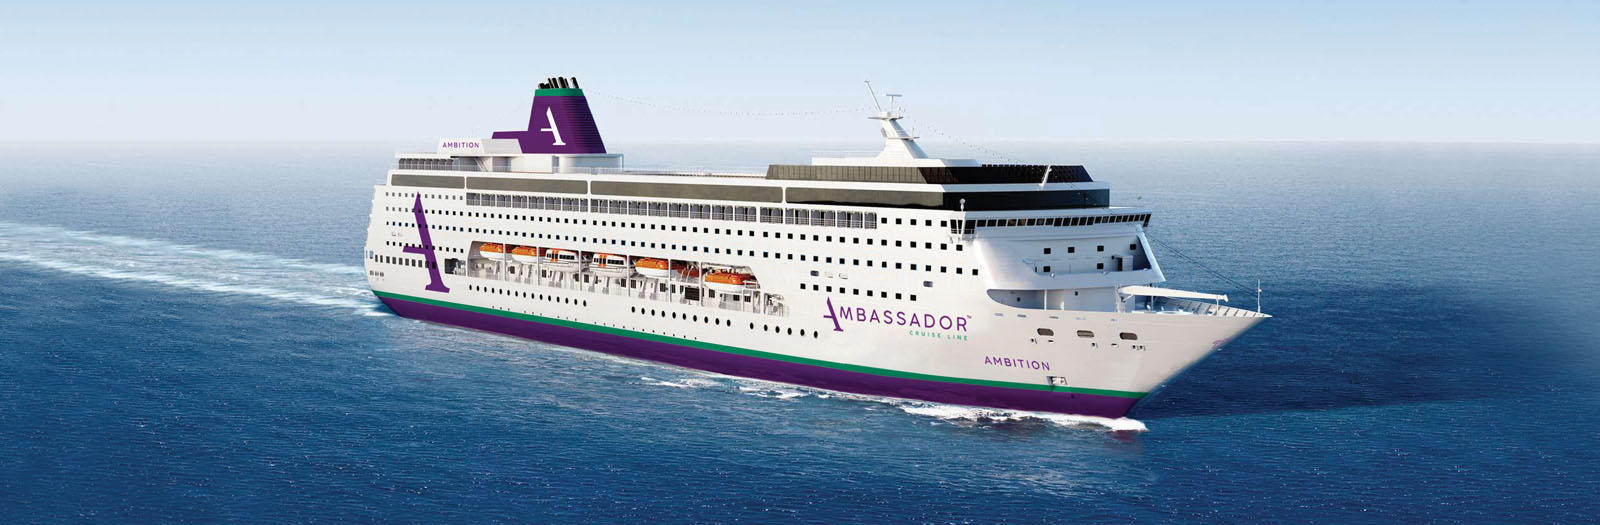 AIDAmira wird nun „Ambition“ heißen und für Ambassador Cruise Line fahren